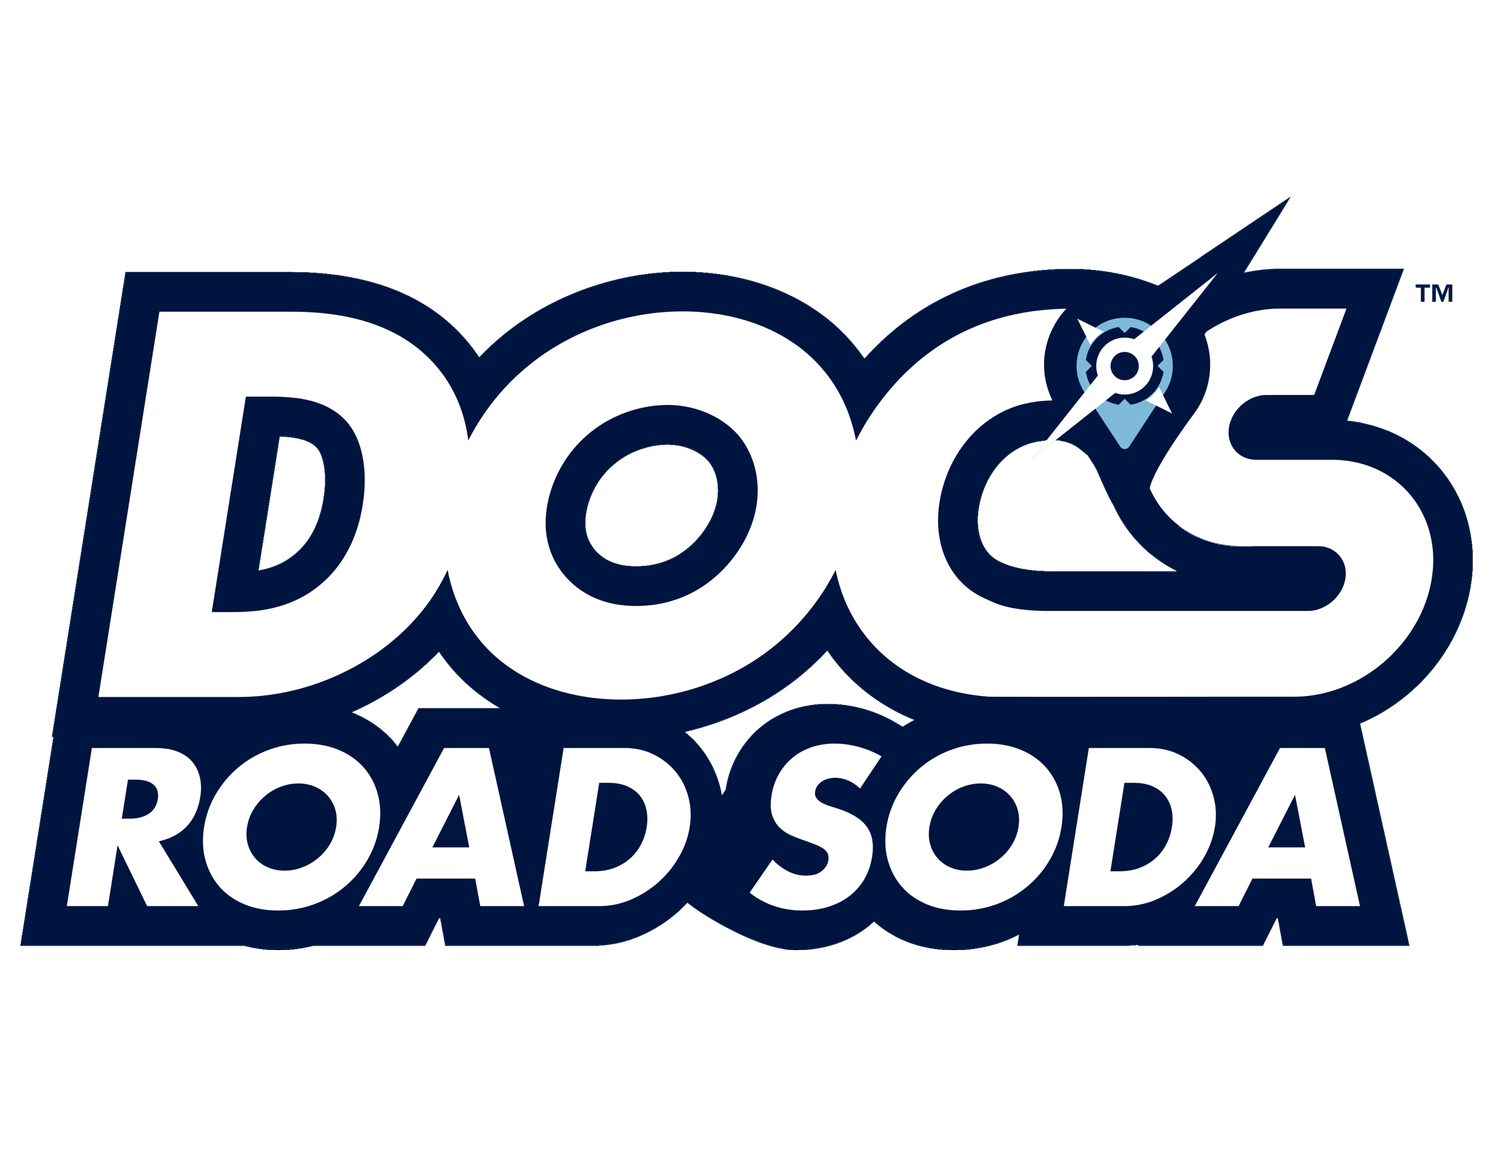 Docs Road Soda